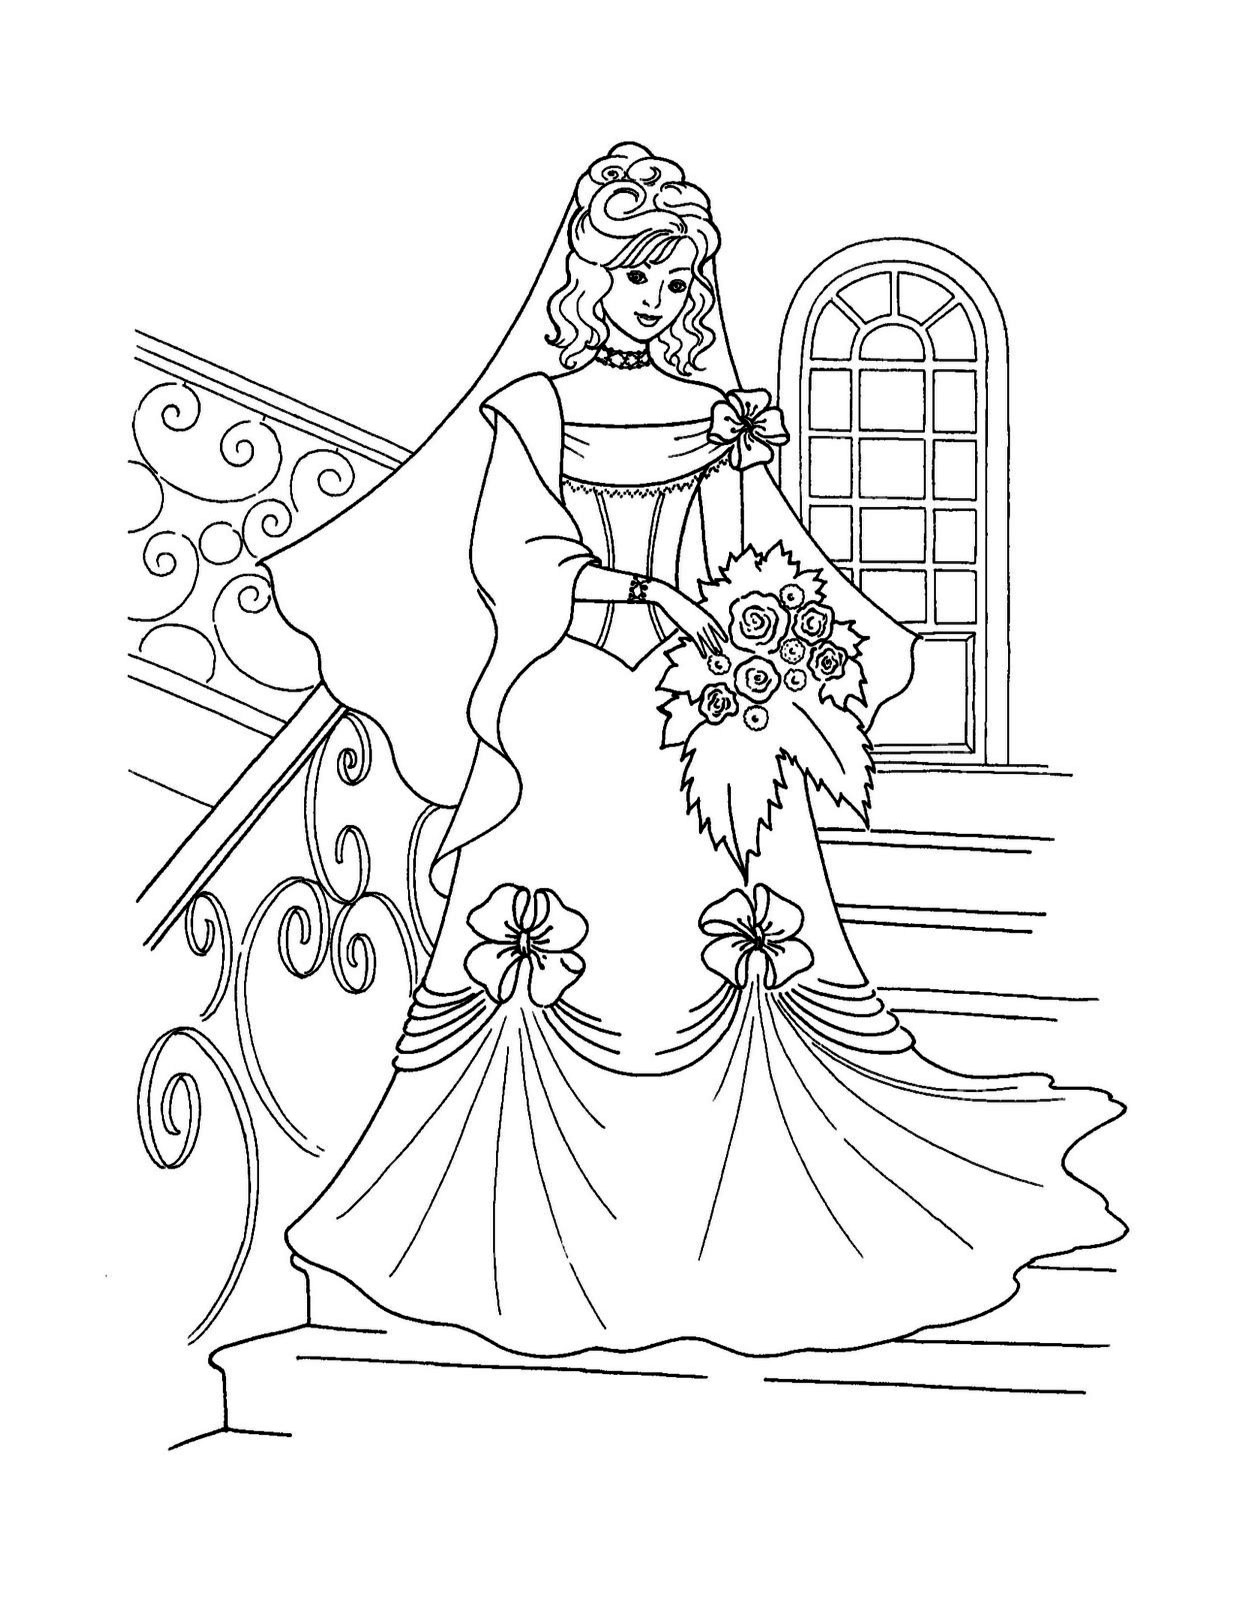 Красавица - невеста спускается по лестнице.